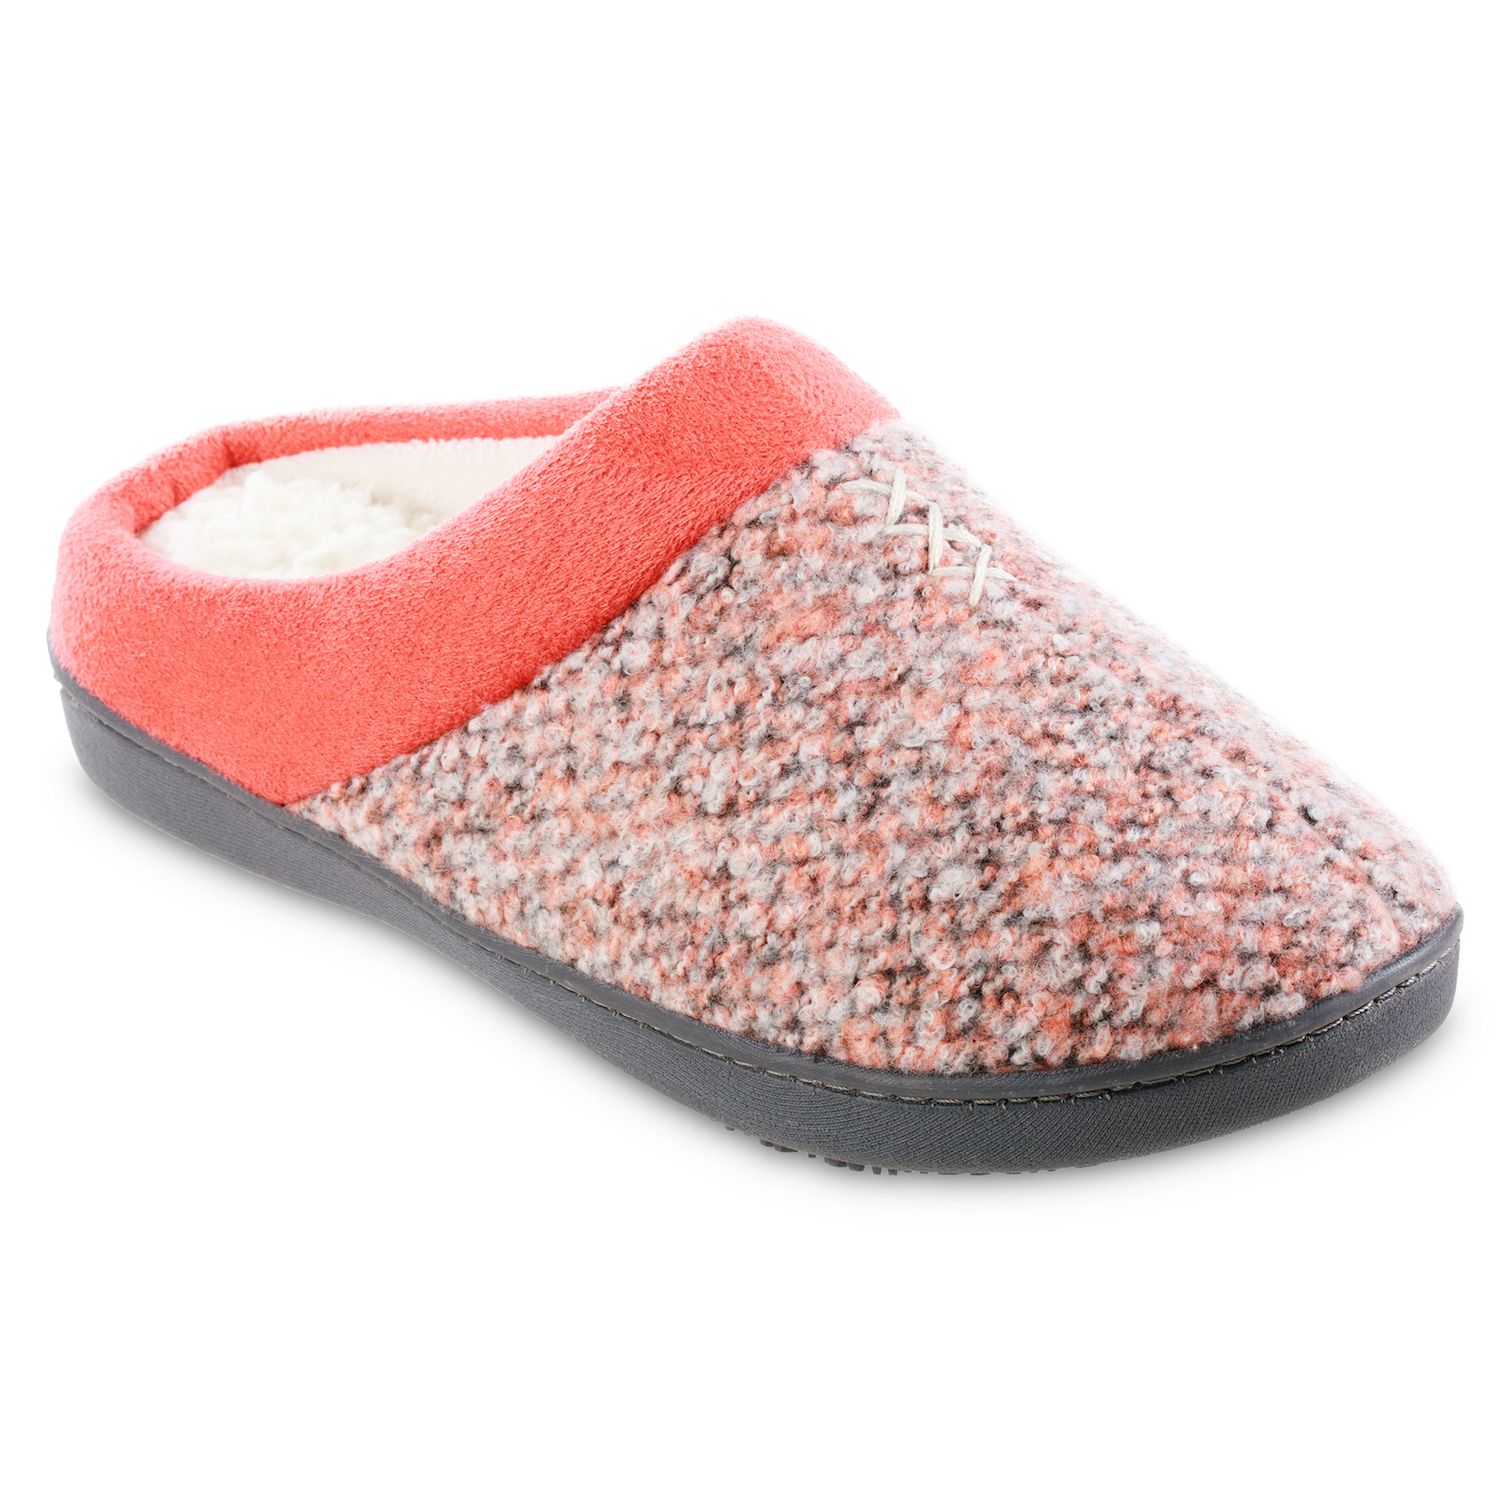 isotoner slippers womens kohls